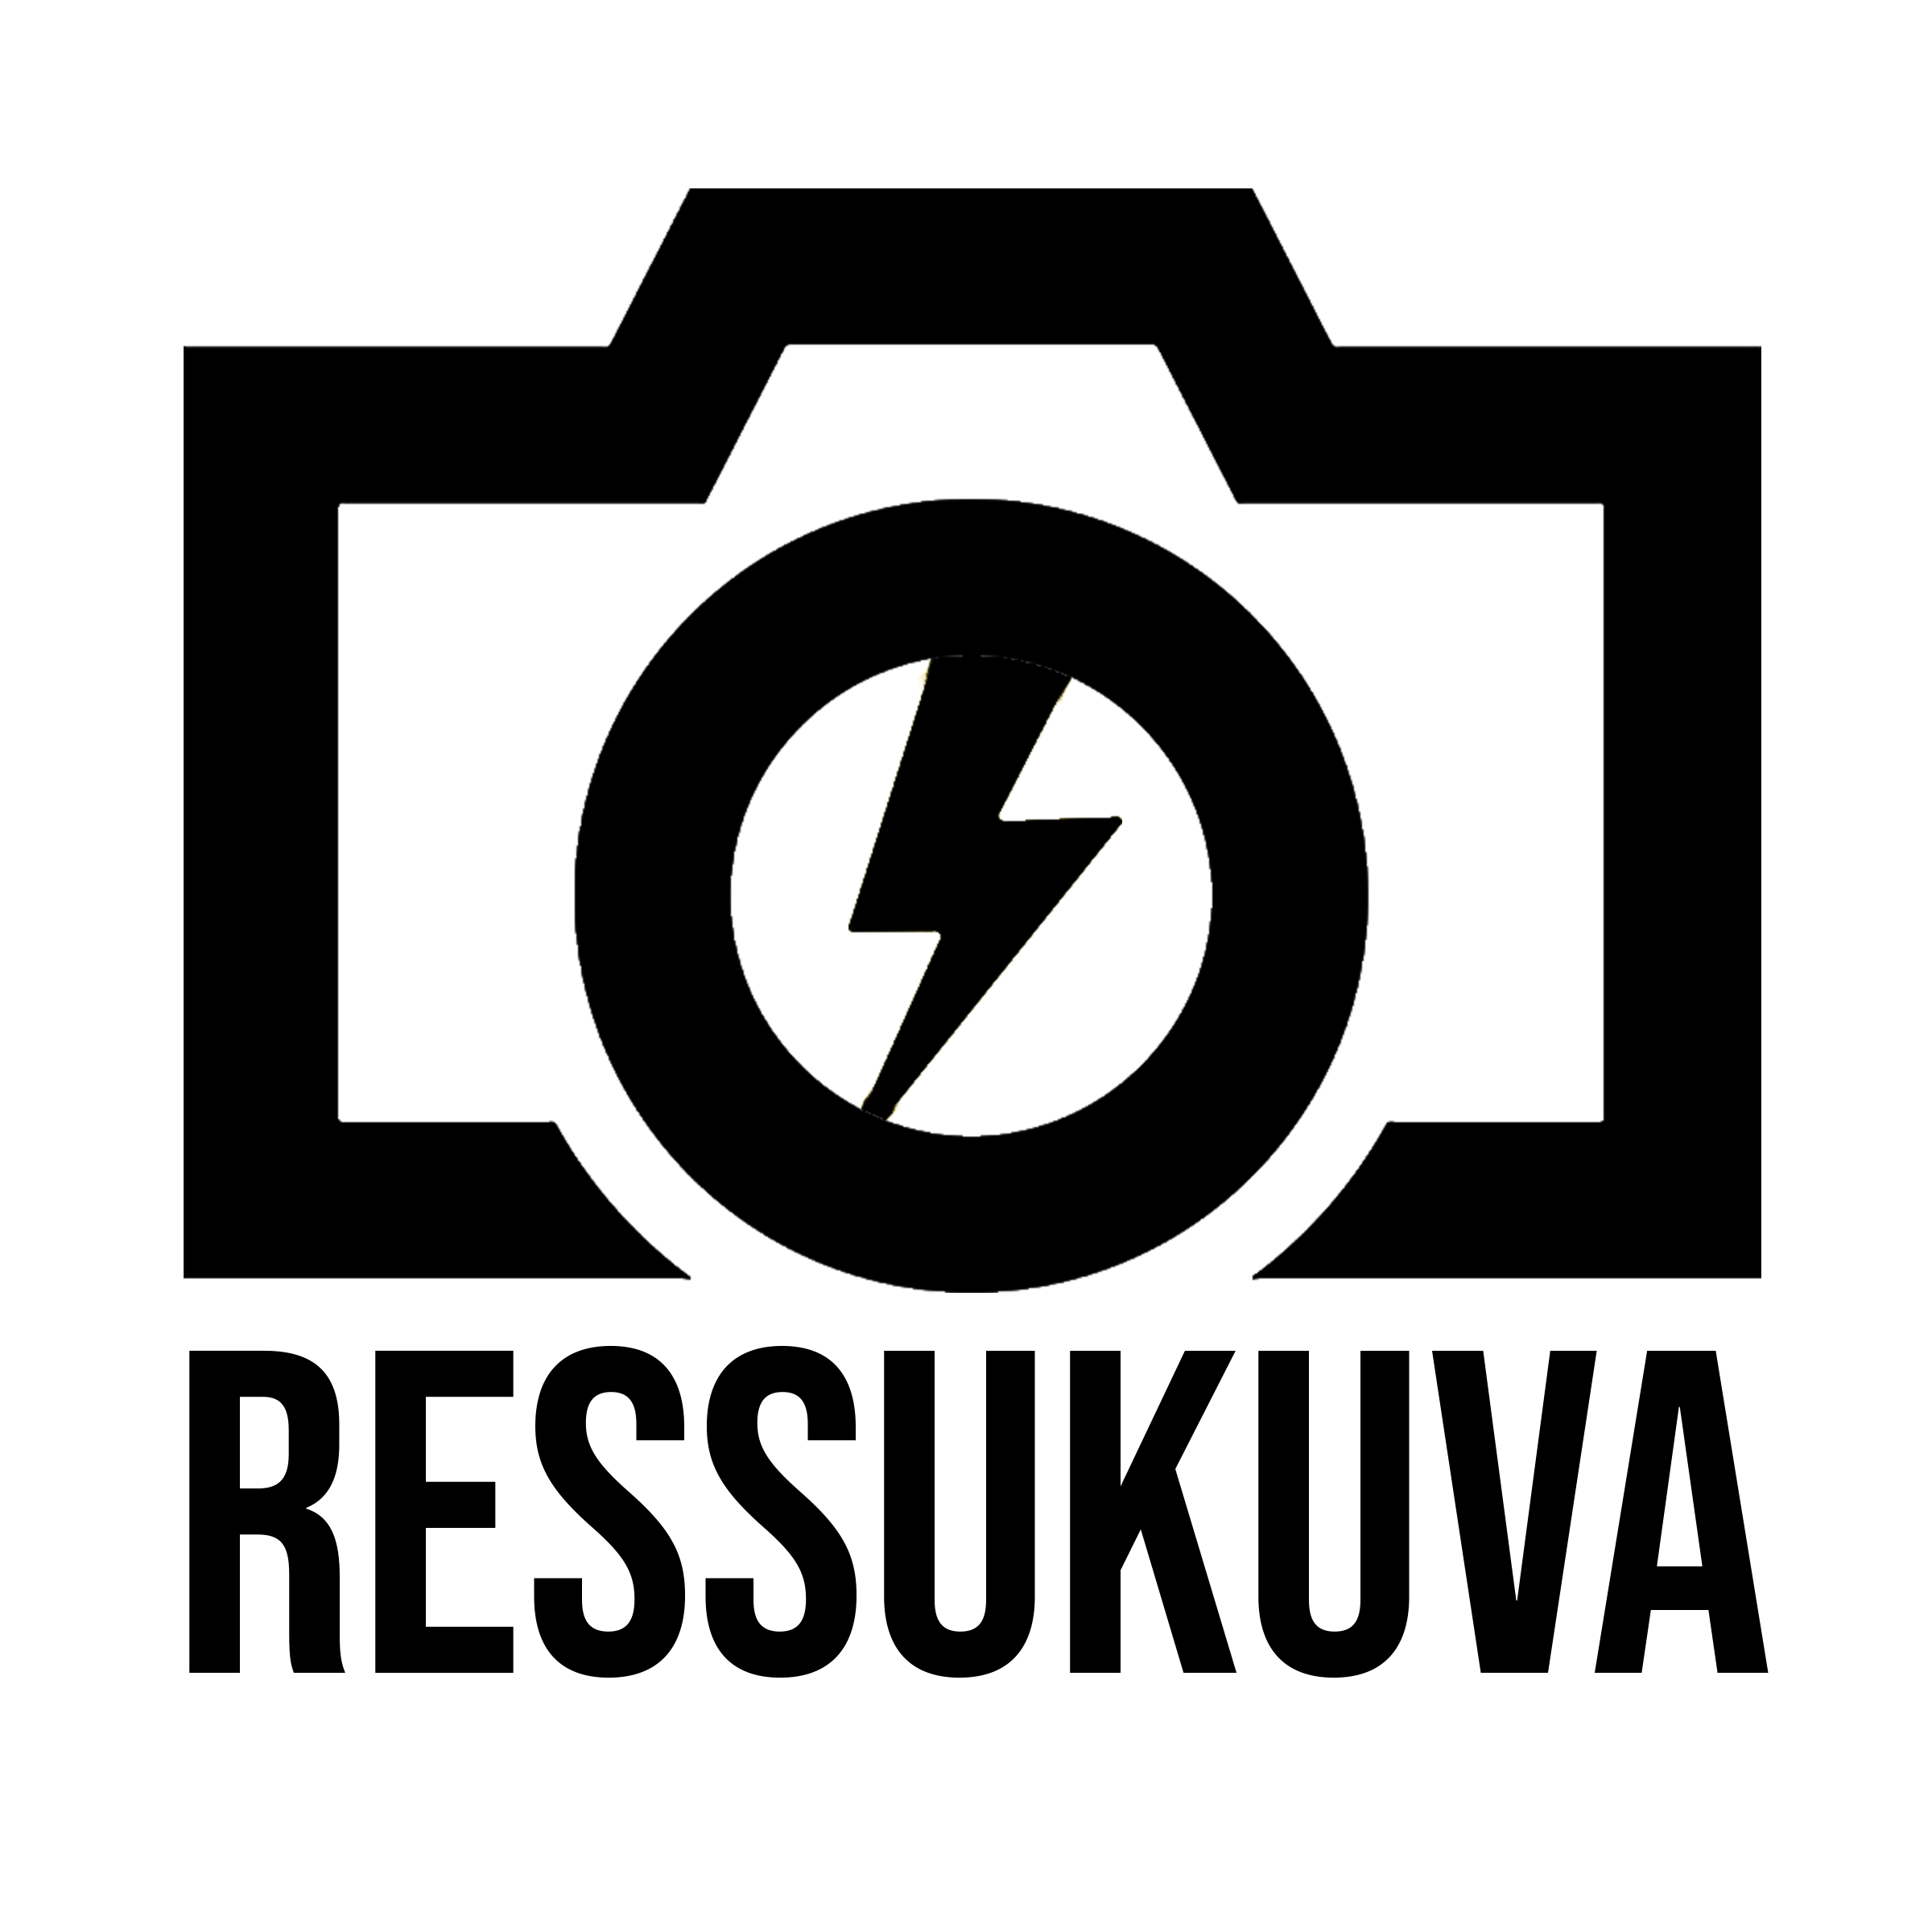 Ressukuva logo